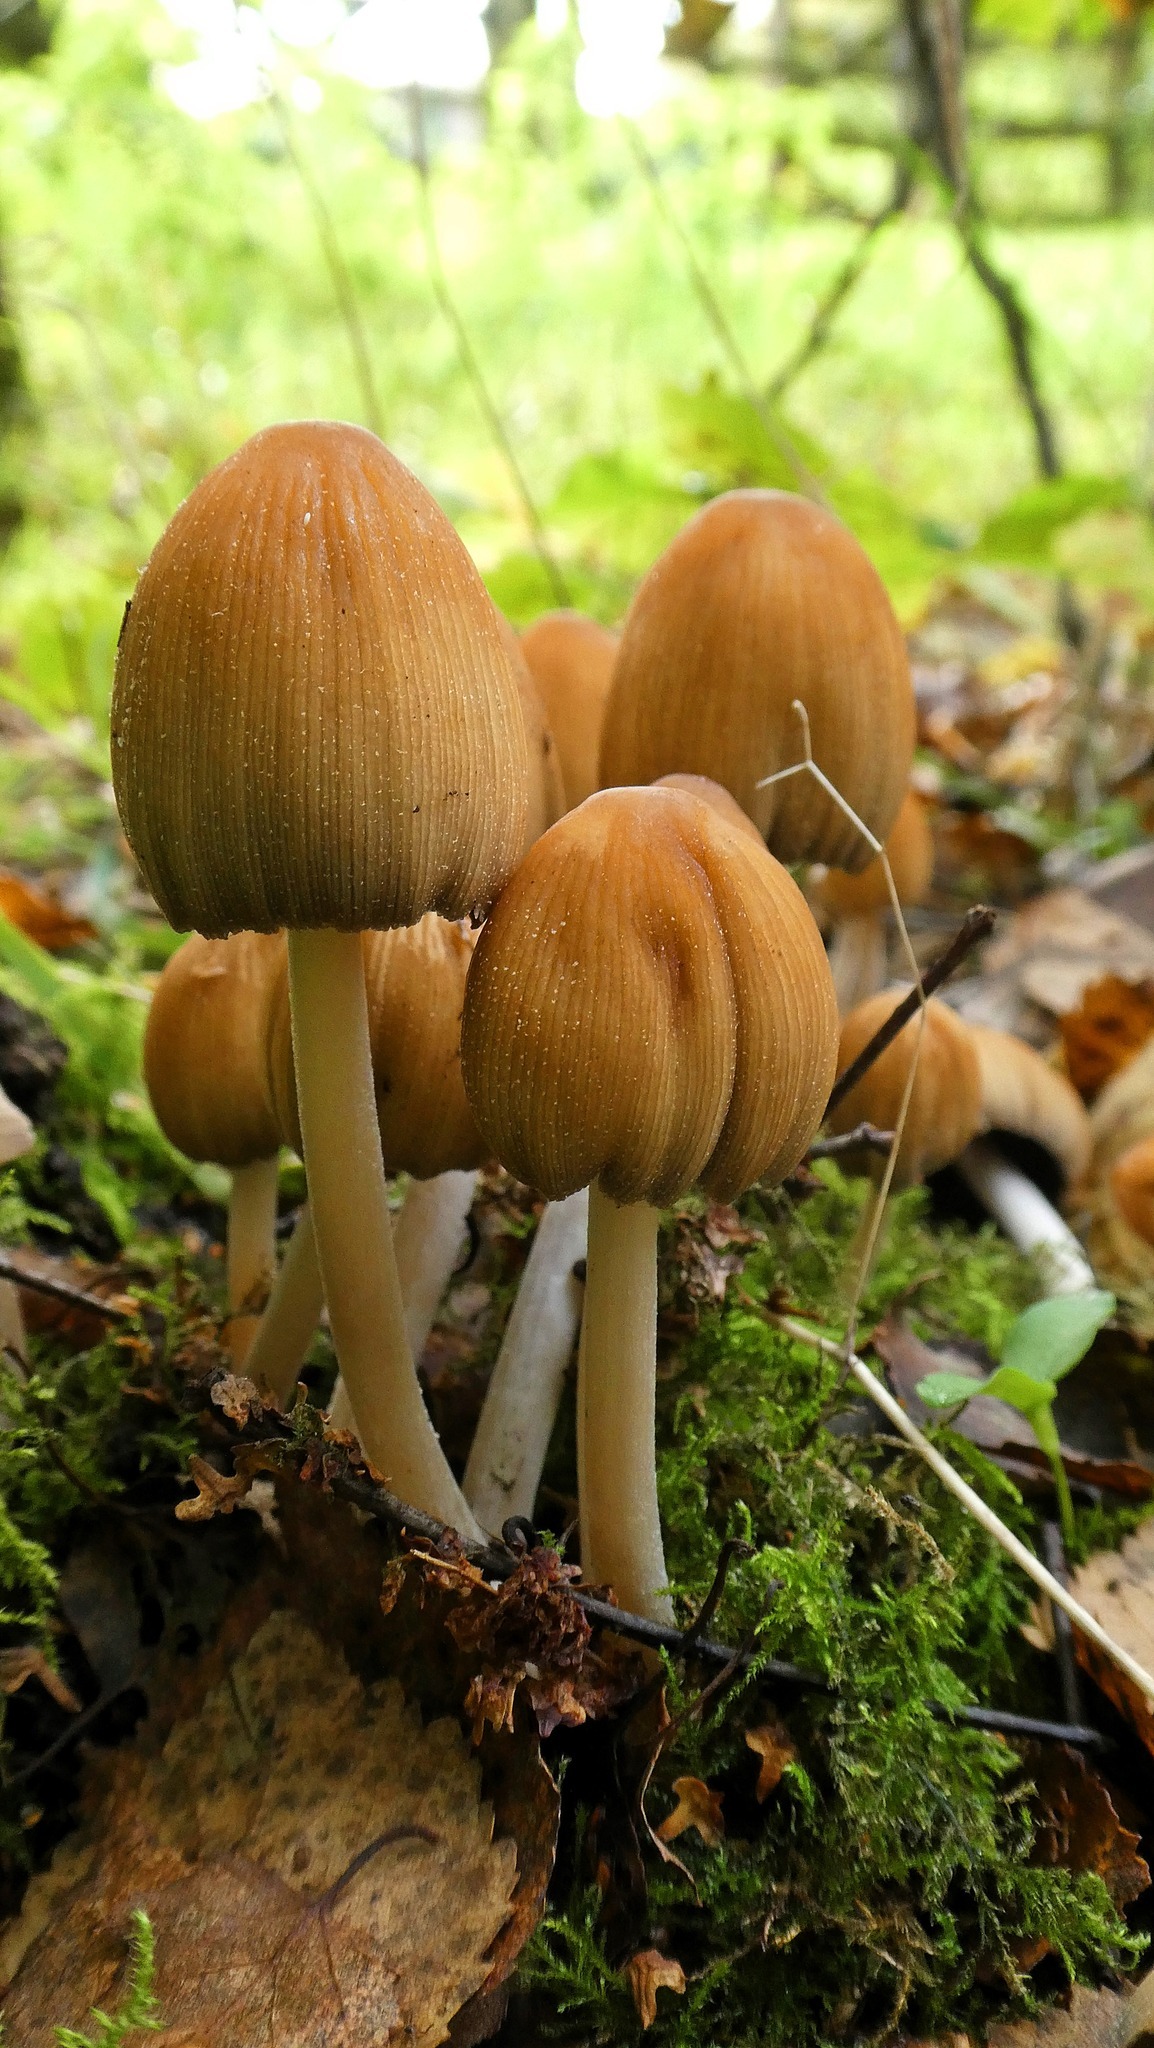 Mushrooms at Marbury by Lynne Bentley